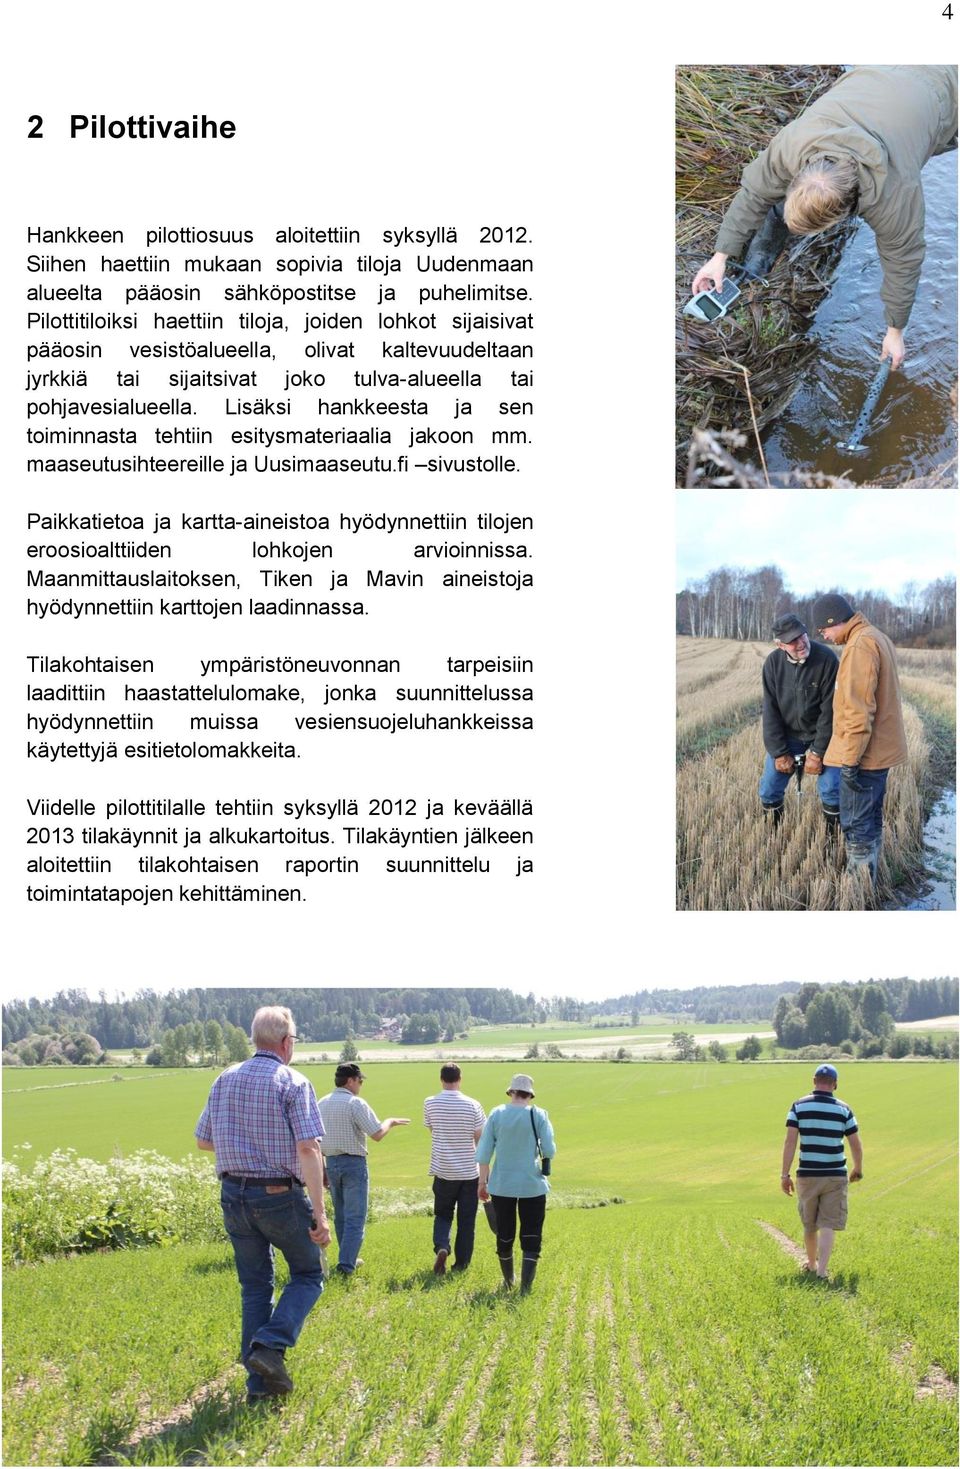 Lisäksi hankkeesta ja sen toiminnasta tehtiin esitysmateriaalia jakoon mm. maaseutusihteereille ja Uusimaaseutu.fi sivustolle.